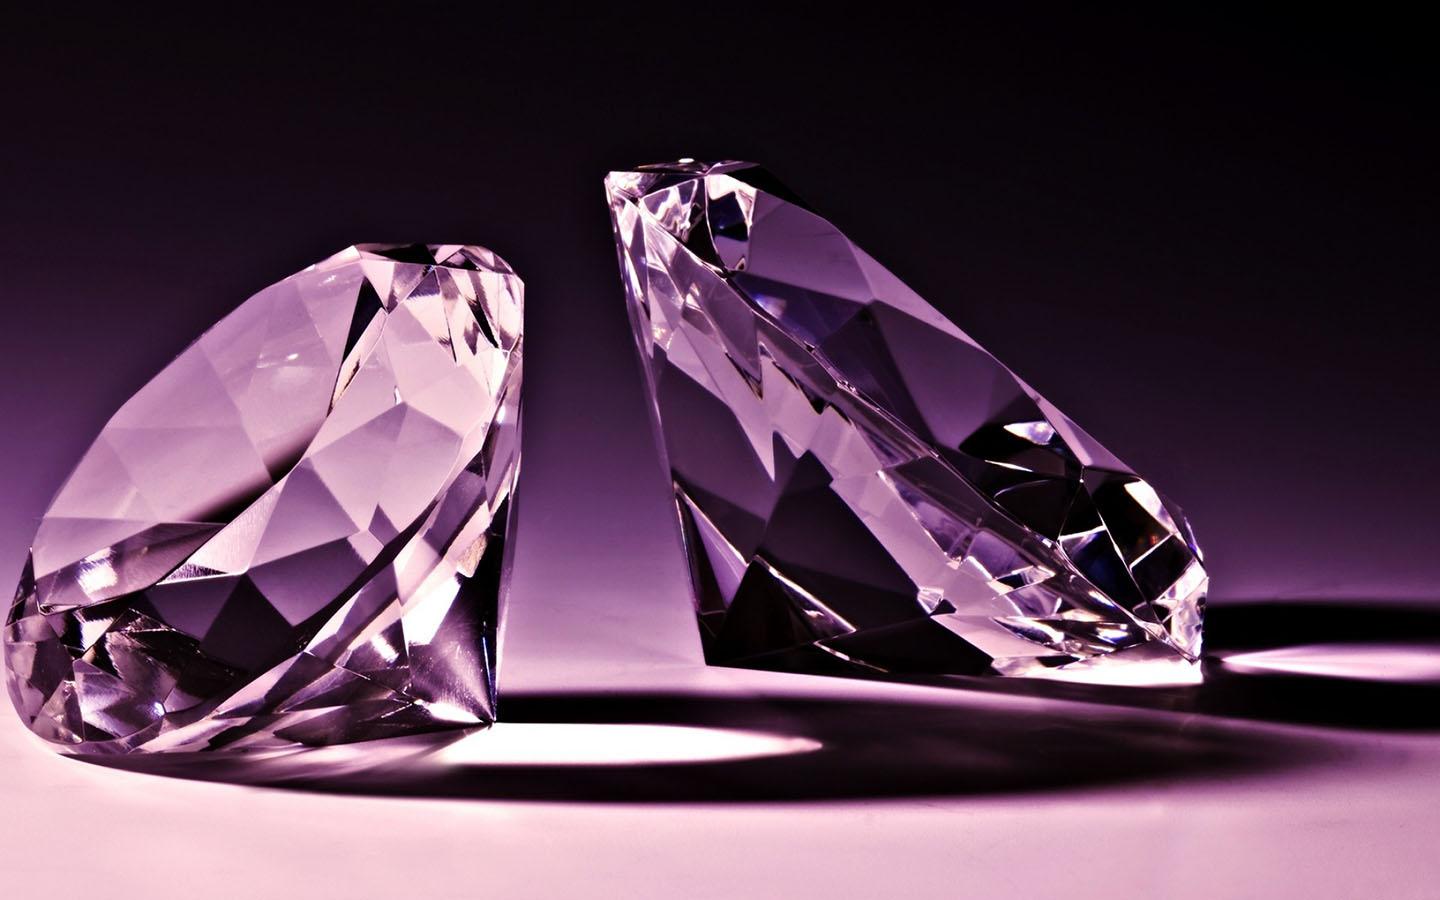 Fondos de diamantes - Q15X62H - 4USkY